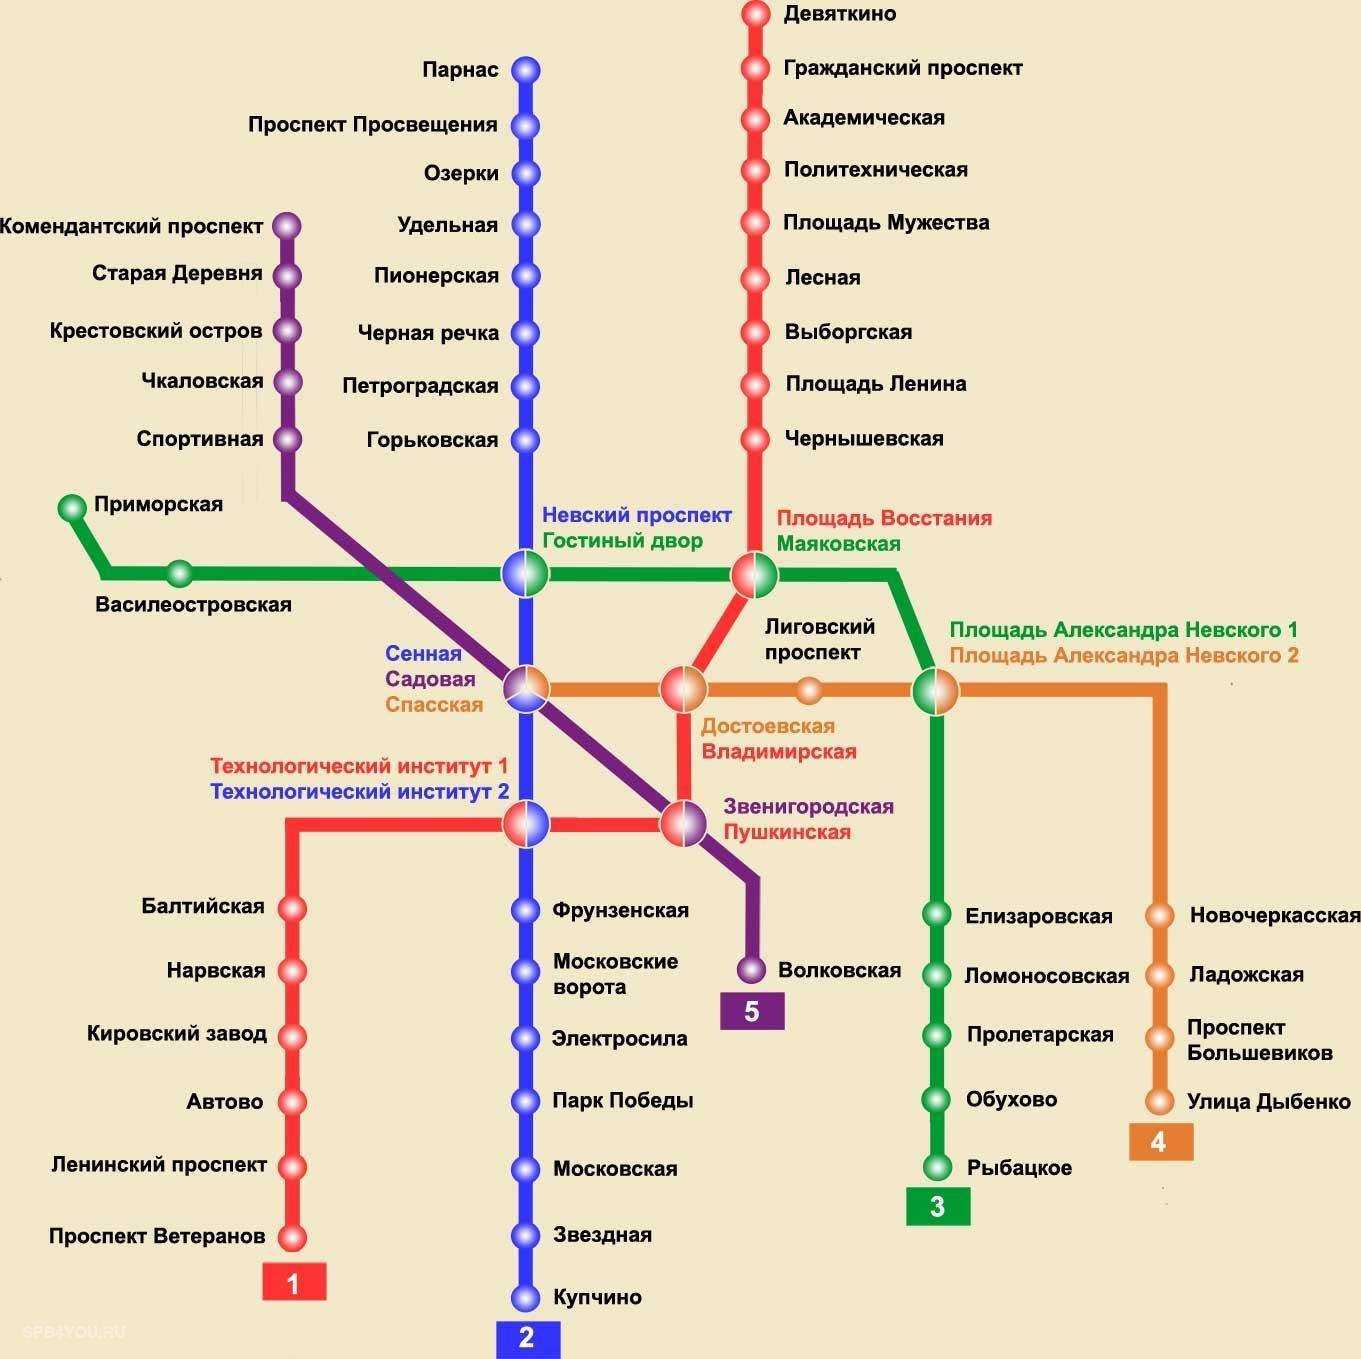 Как добраться на московский вокзал в питере с фрунзенской: советы и рекомендации